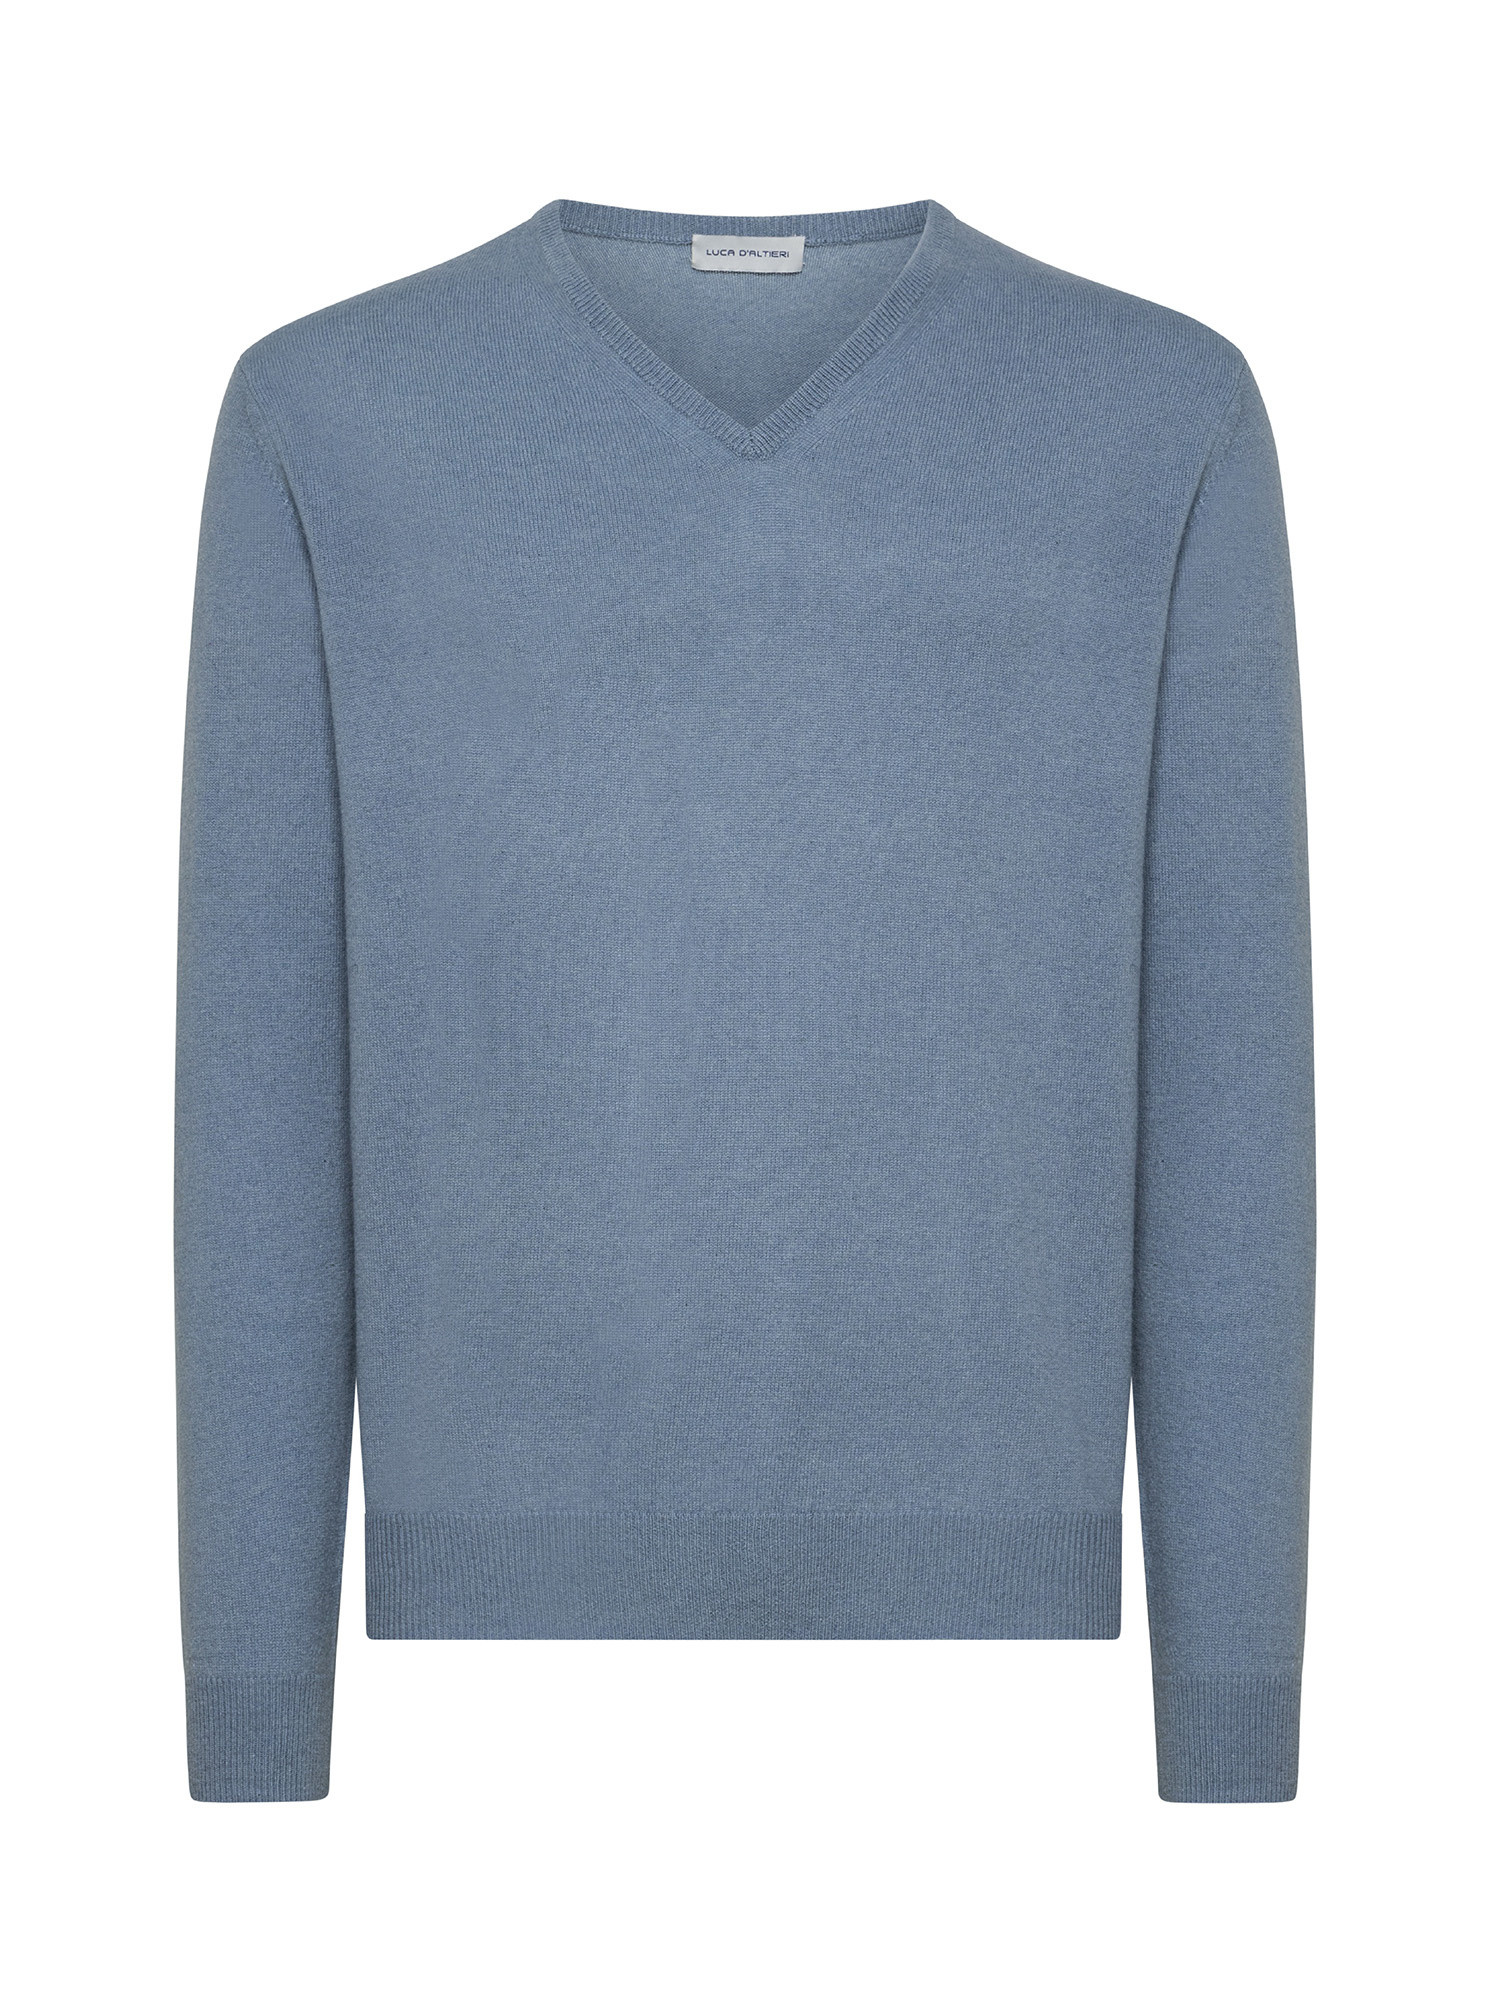 Пуловер с V-образным вырезом из чистого кашемира Luca D'Altieri, голубой женский пуловер с вышивкой и v образным вырезом